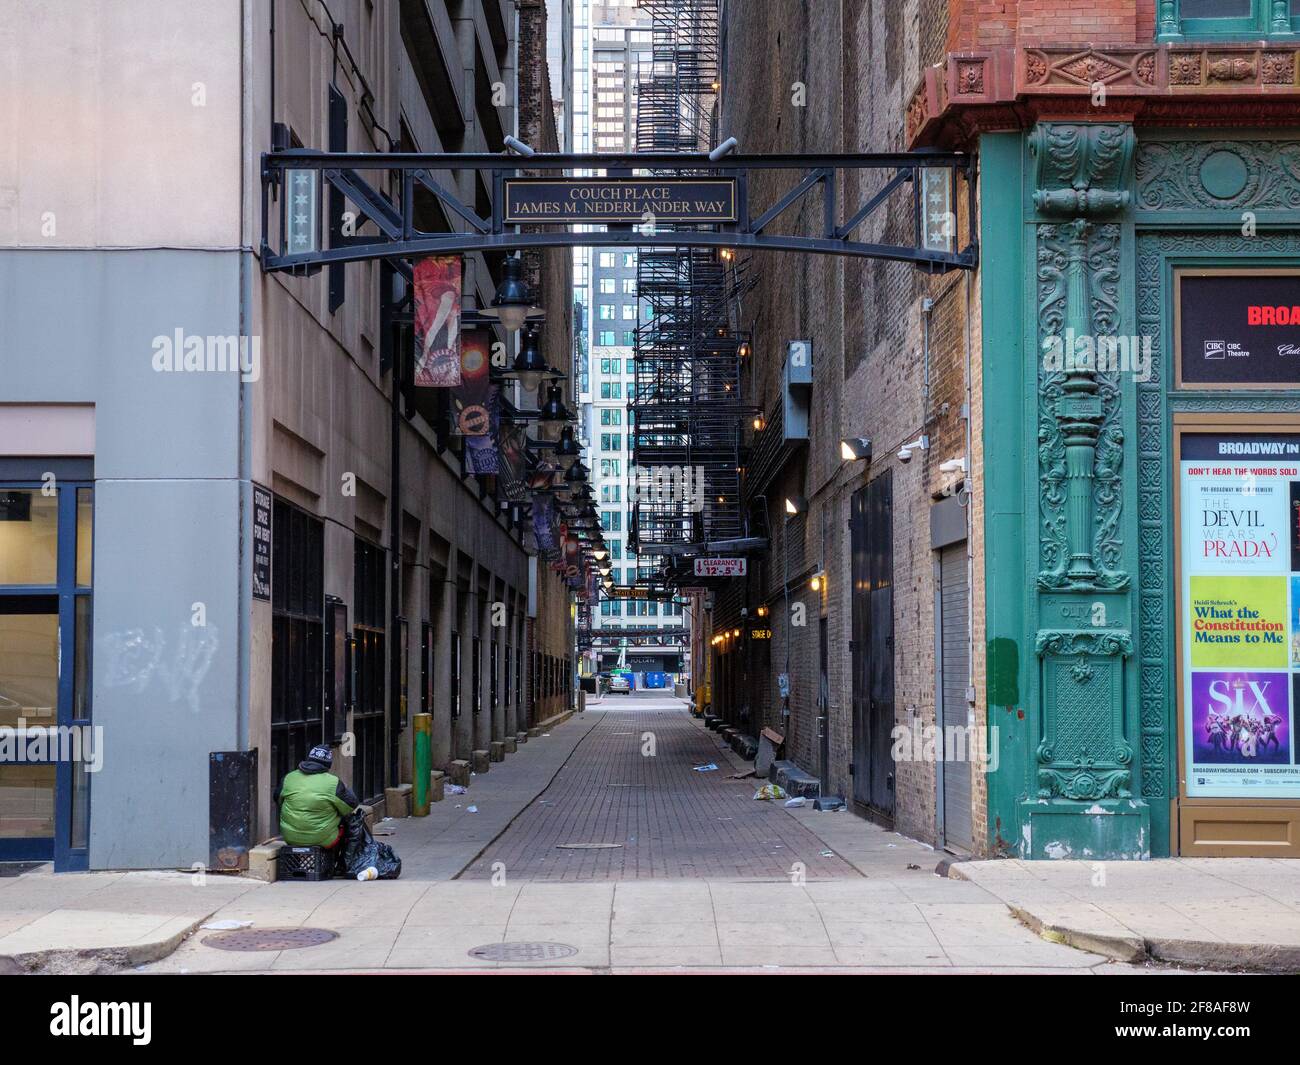 Extremisten Ga wandelen R Couch Place, James M Nederlandger Way. Chicago, Illinois Stock Photo - Alamy